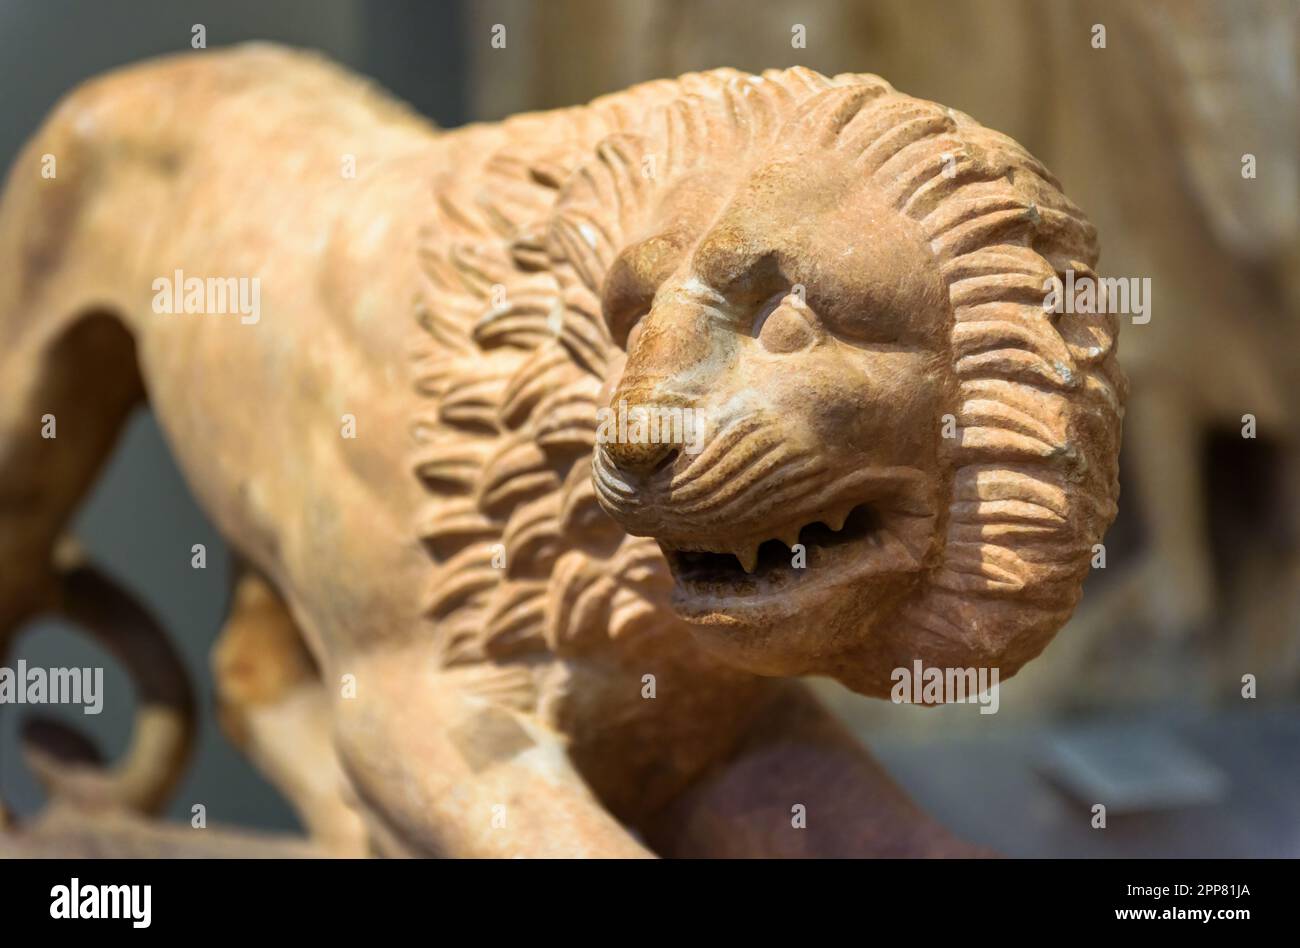 Löwenstatue aus Stein, antike griechische Skulptur von Tieren, wilder Löwe aus Marmor aus nächster Nähe. Thema Kultur, Antiquität, Kunst, Zivilisation. Stockfoto